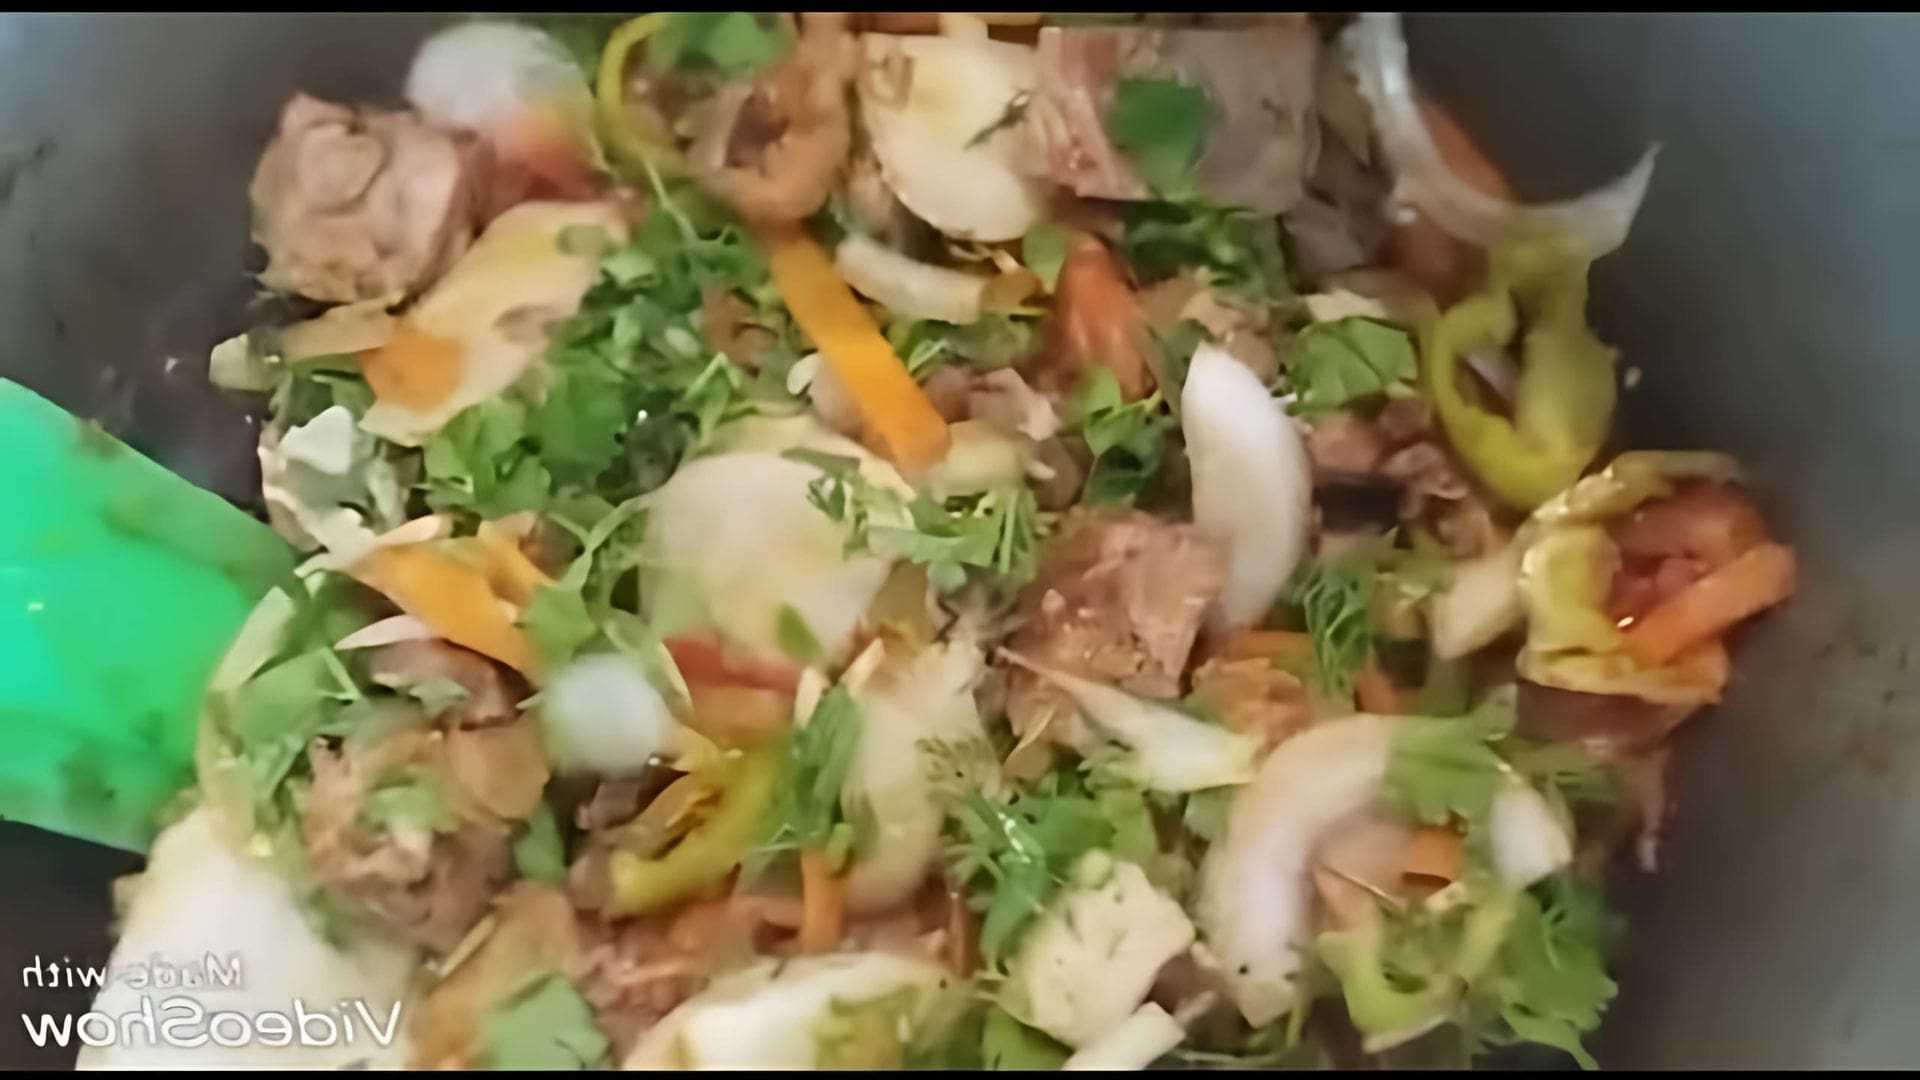 В этом видео демонстрируется процесс приготовления блюда из вареного мяса